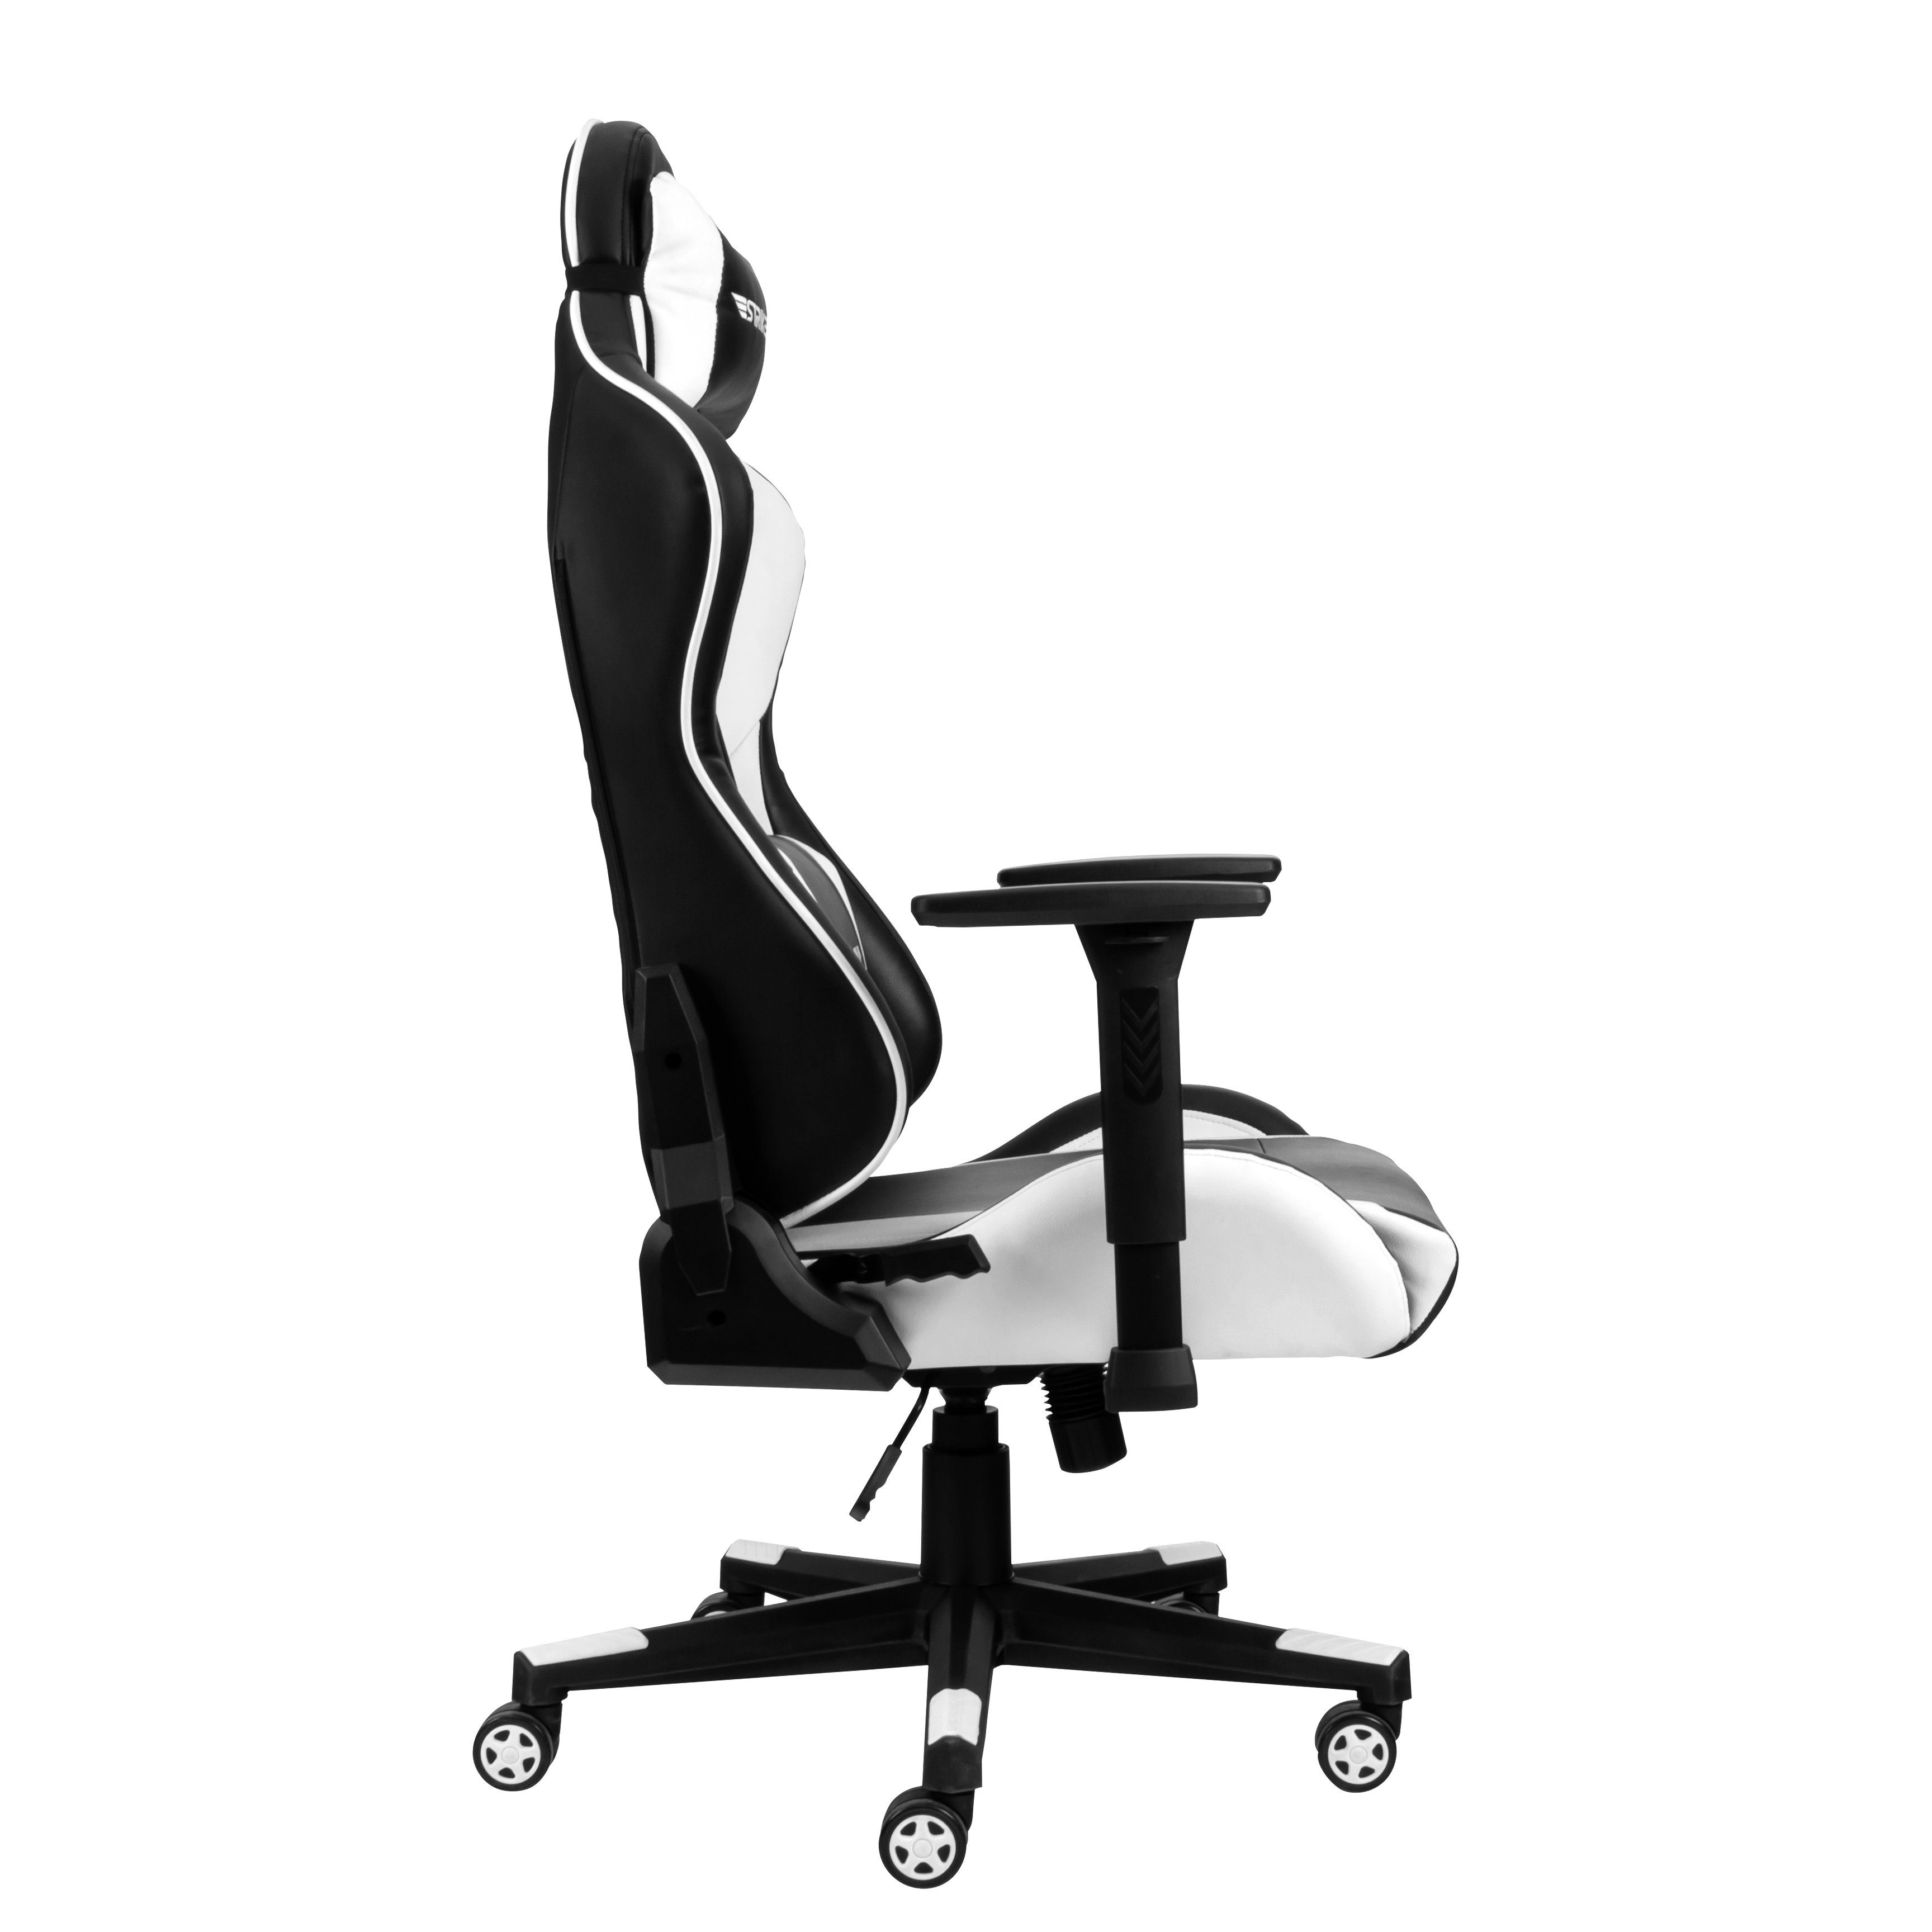 Hyrican Gaming-Stuhl Kunstleder, Tank" für Bürostuhl, geeignet Schreibtischstuhl, Erwachsene "Striker Gamingstuhl, schwarz/weiß, ergonomischer